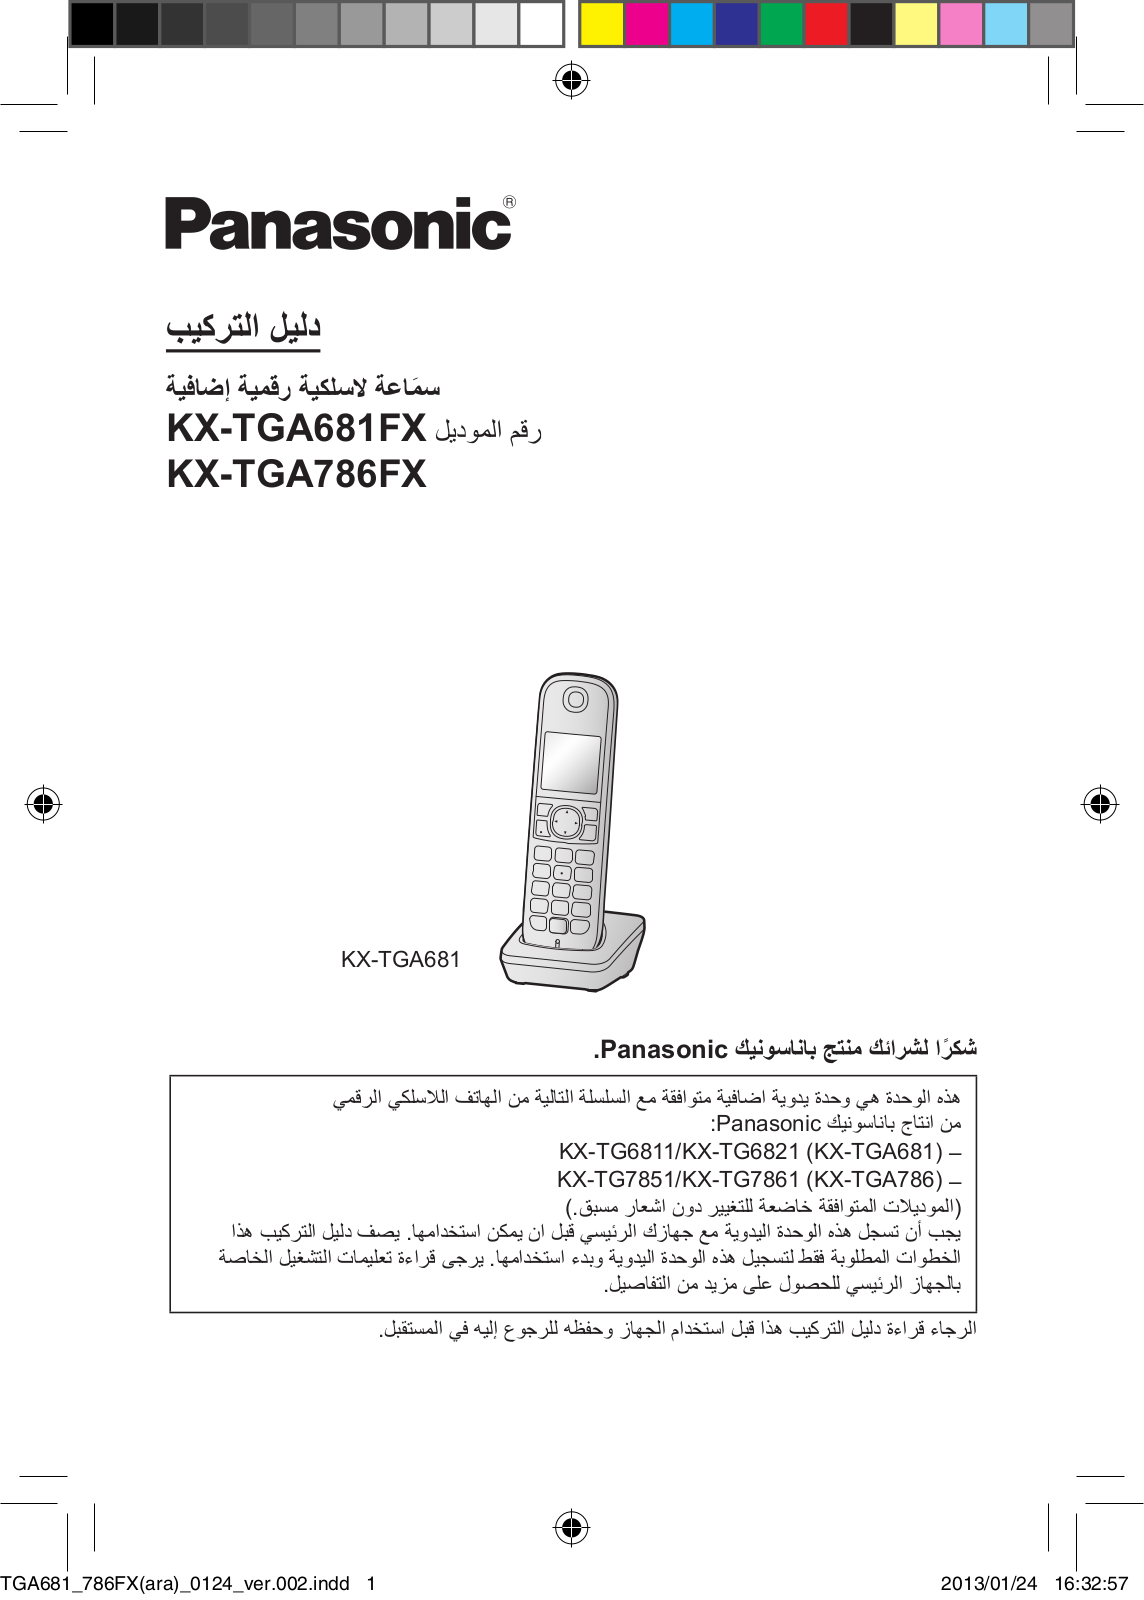 Panasonic KX-TGA681FX, KX-TGA786FX User Manual